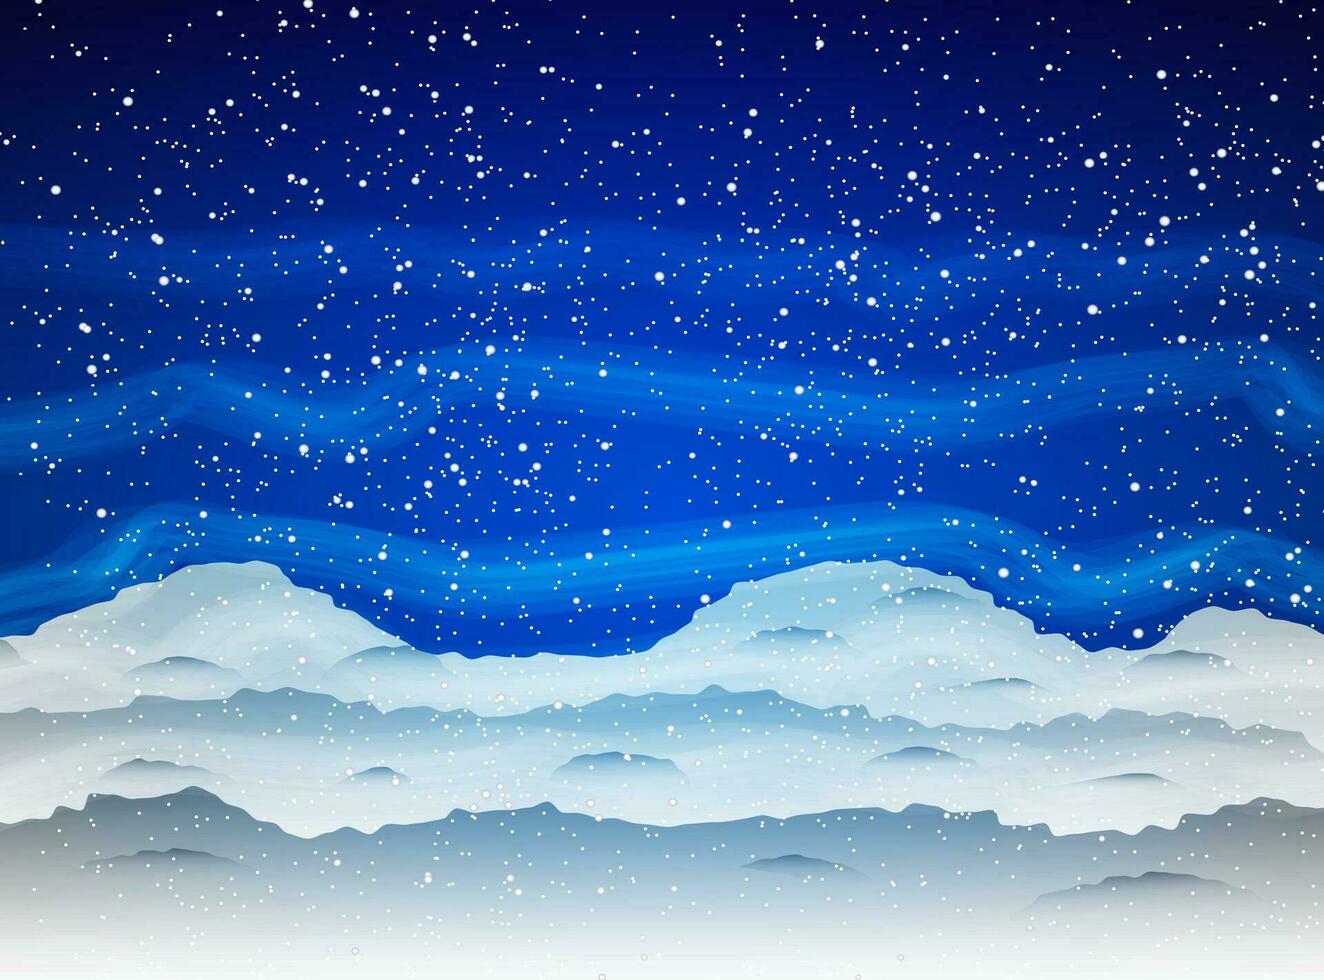 invierno antecedentes con nevada y derivas en oscuro azul cielo con niebla. vector ilustración, modelo para saludos Navidad nuevo año tarjeta